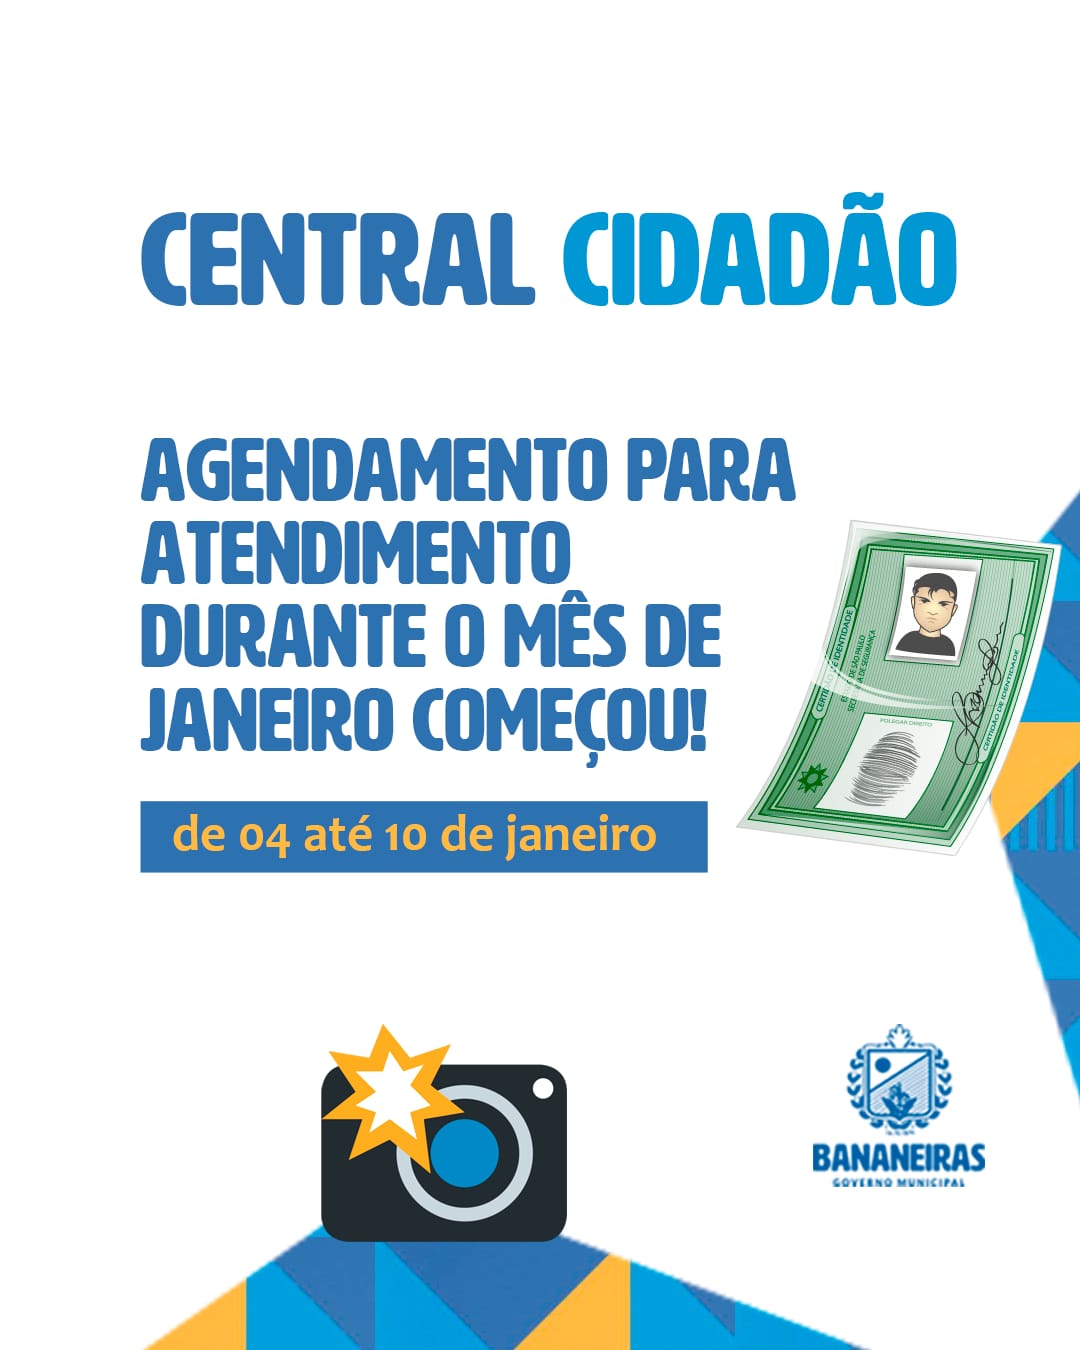 Central Cidadão abre agendamentos para emissão de RG no mês de Janeiro, em Bananeiras